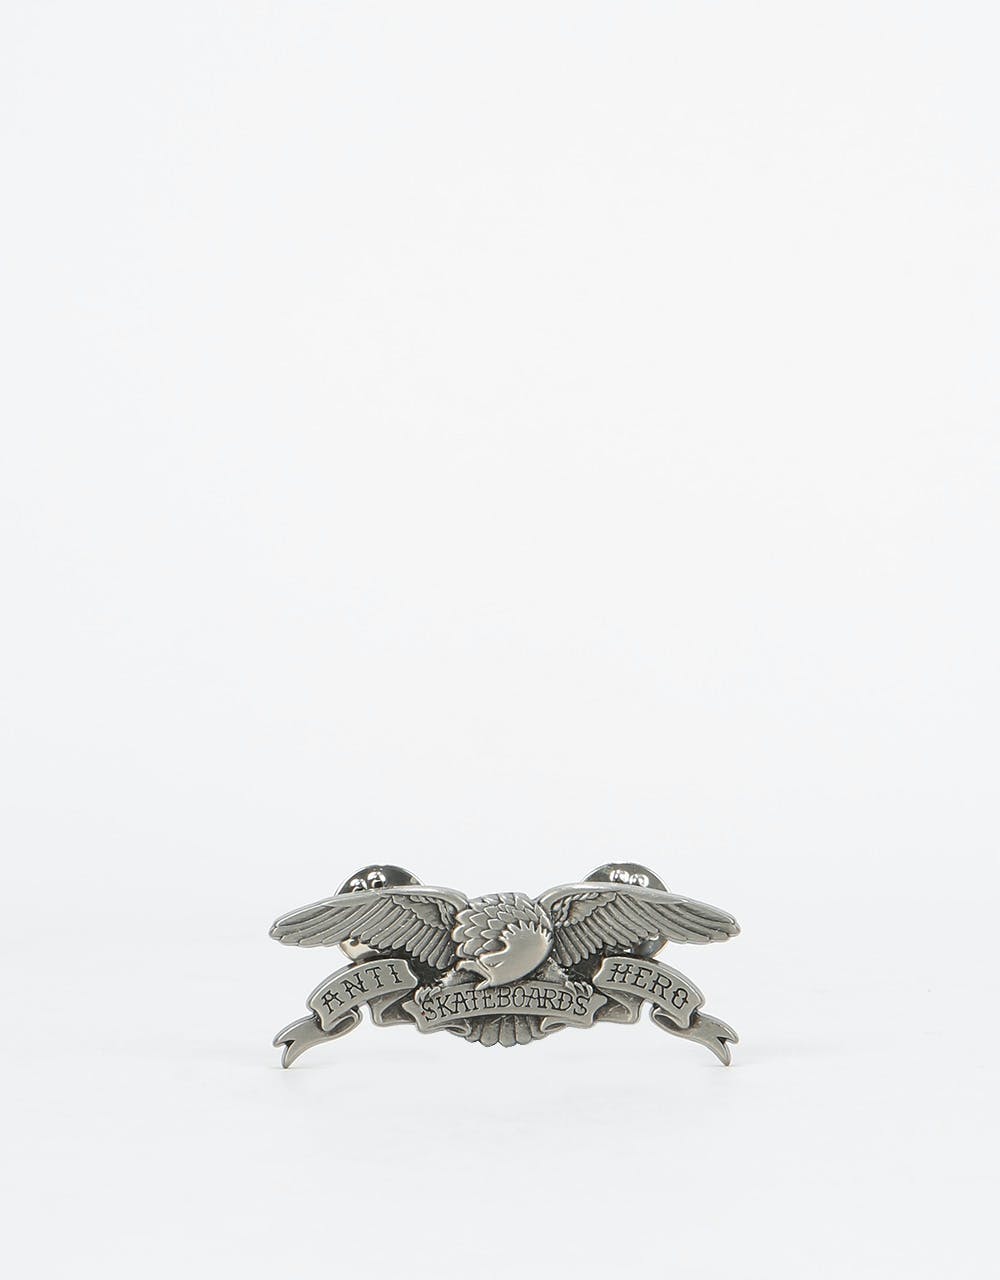 Anti Hero Eagle Lapel Pin - Antique Tin